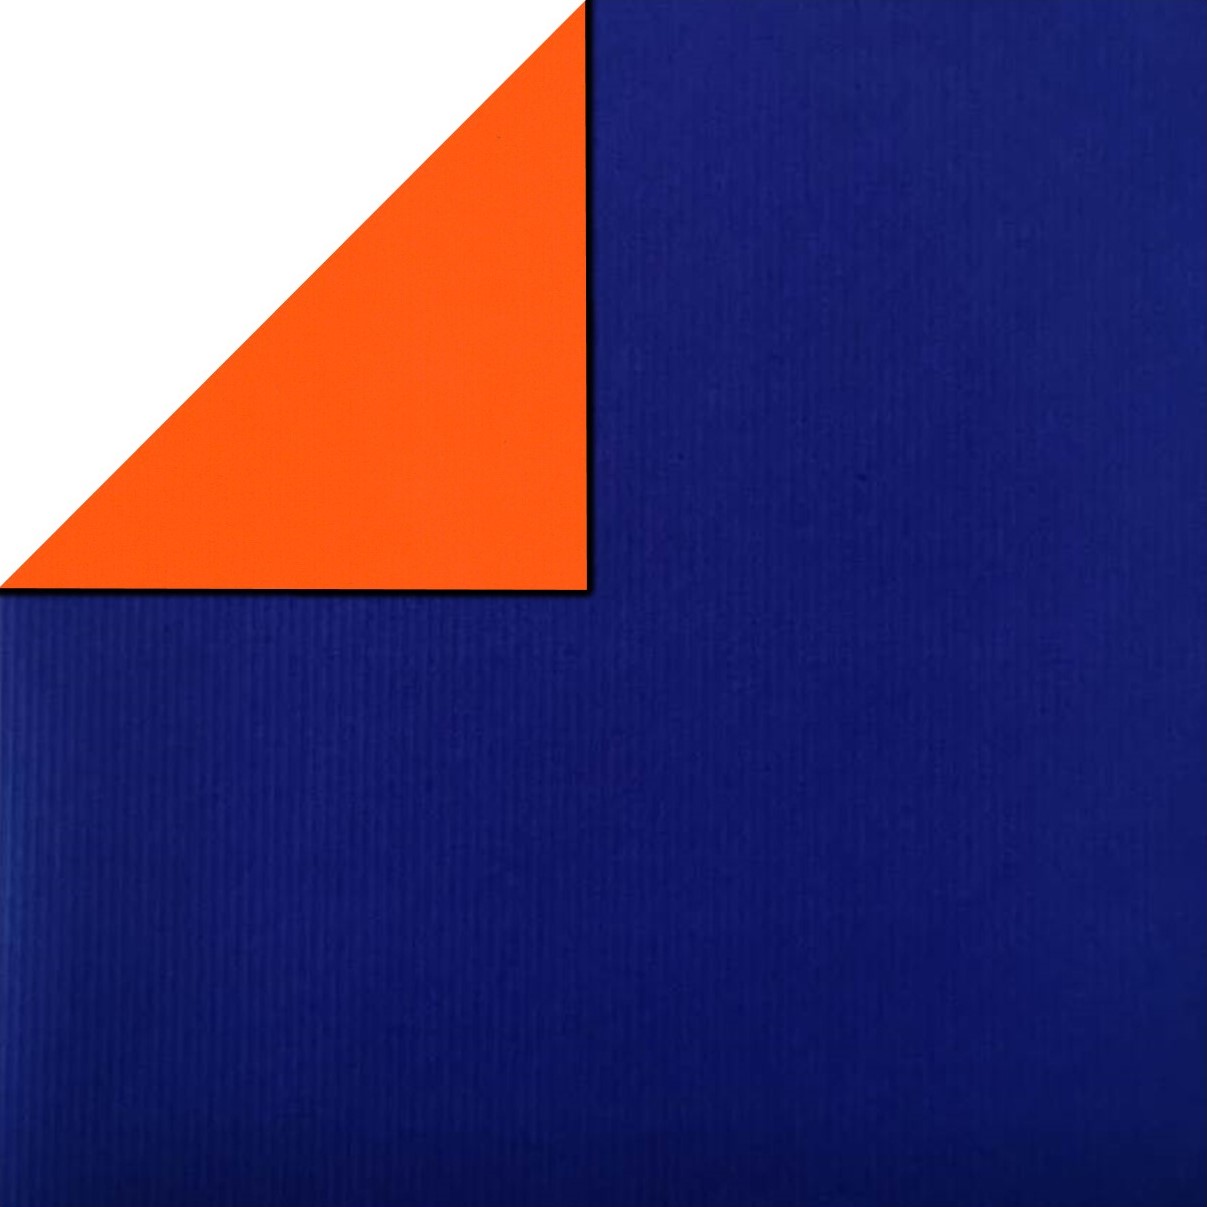 Geschenkpaper vorne uni königsblau, hinten uni orange auf geripptes mattes starkes papier.
 